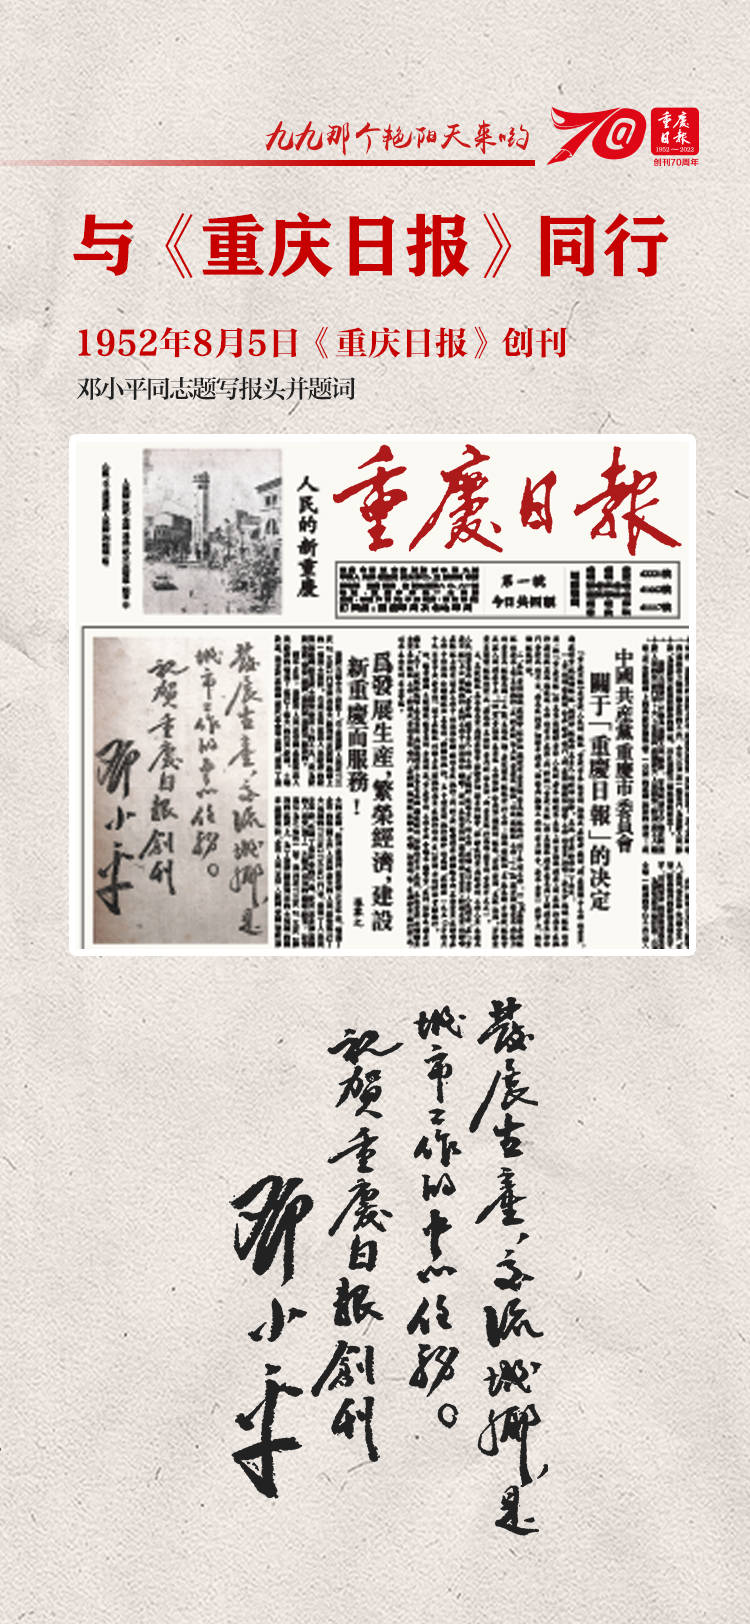 与重庆日报同行》——重庆日报创刊70周年纪念数字藏品领取活动_明信片_ 